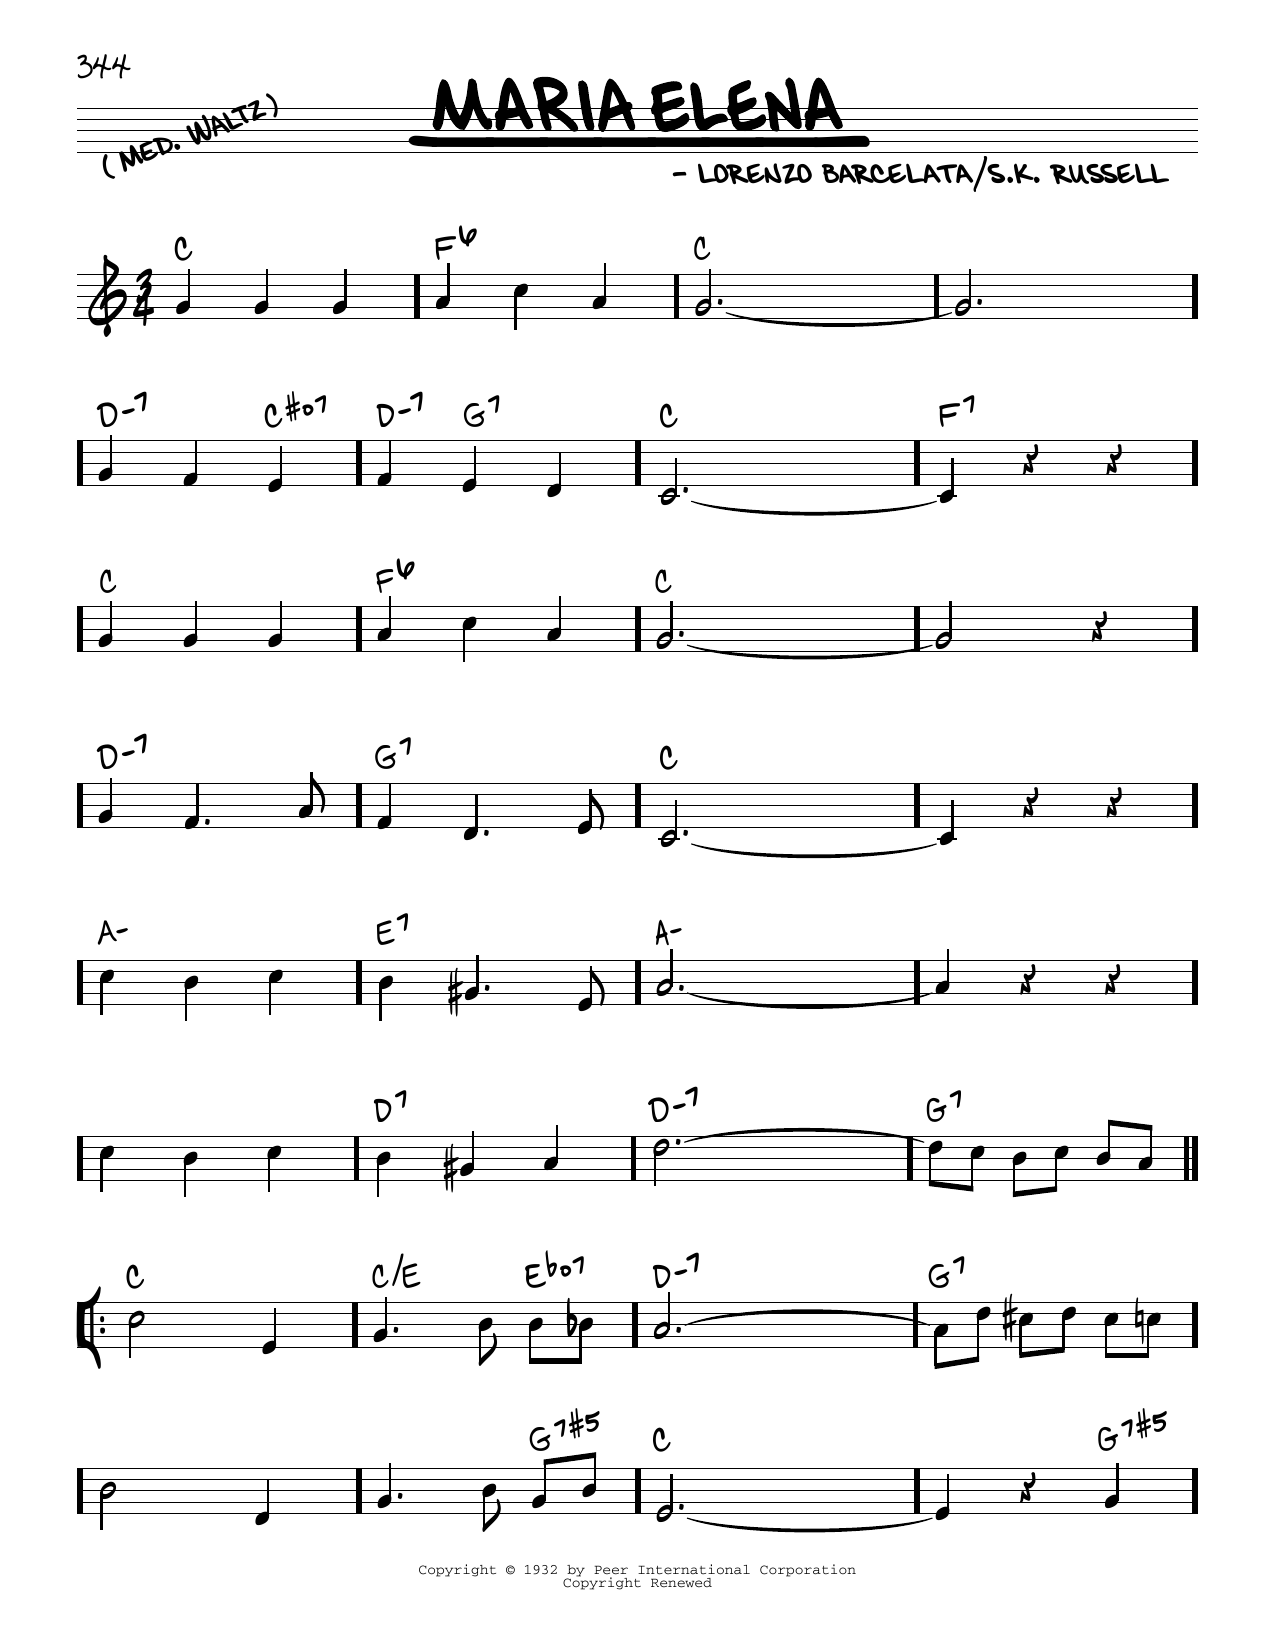 Indios Trabajaras Maria Elena Sheet Music Notes & Chords for Real Book – Melody & Chords - Download or Print PDF